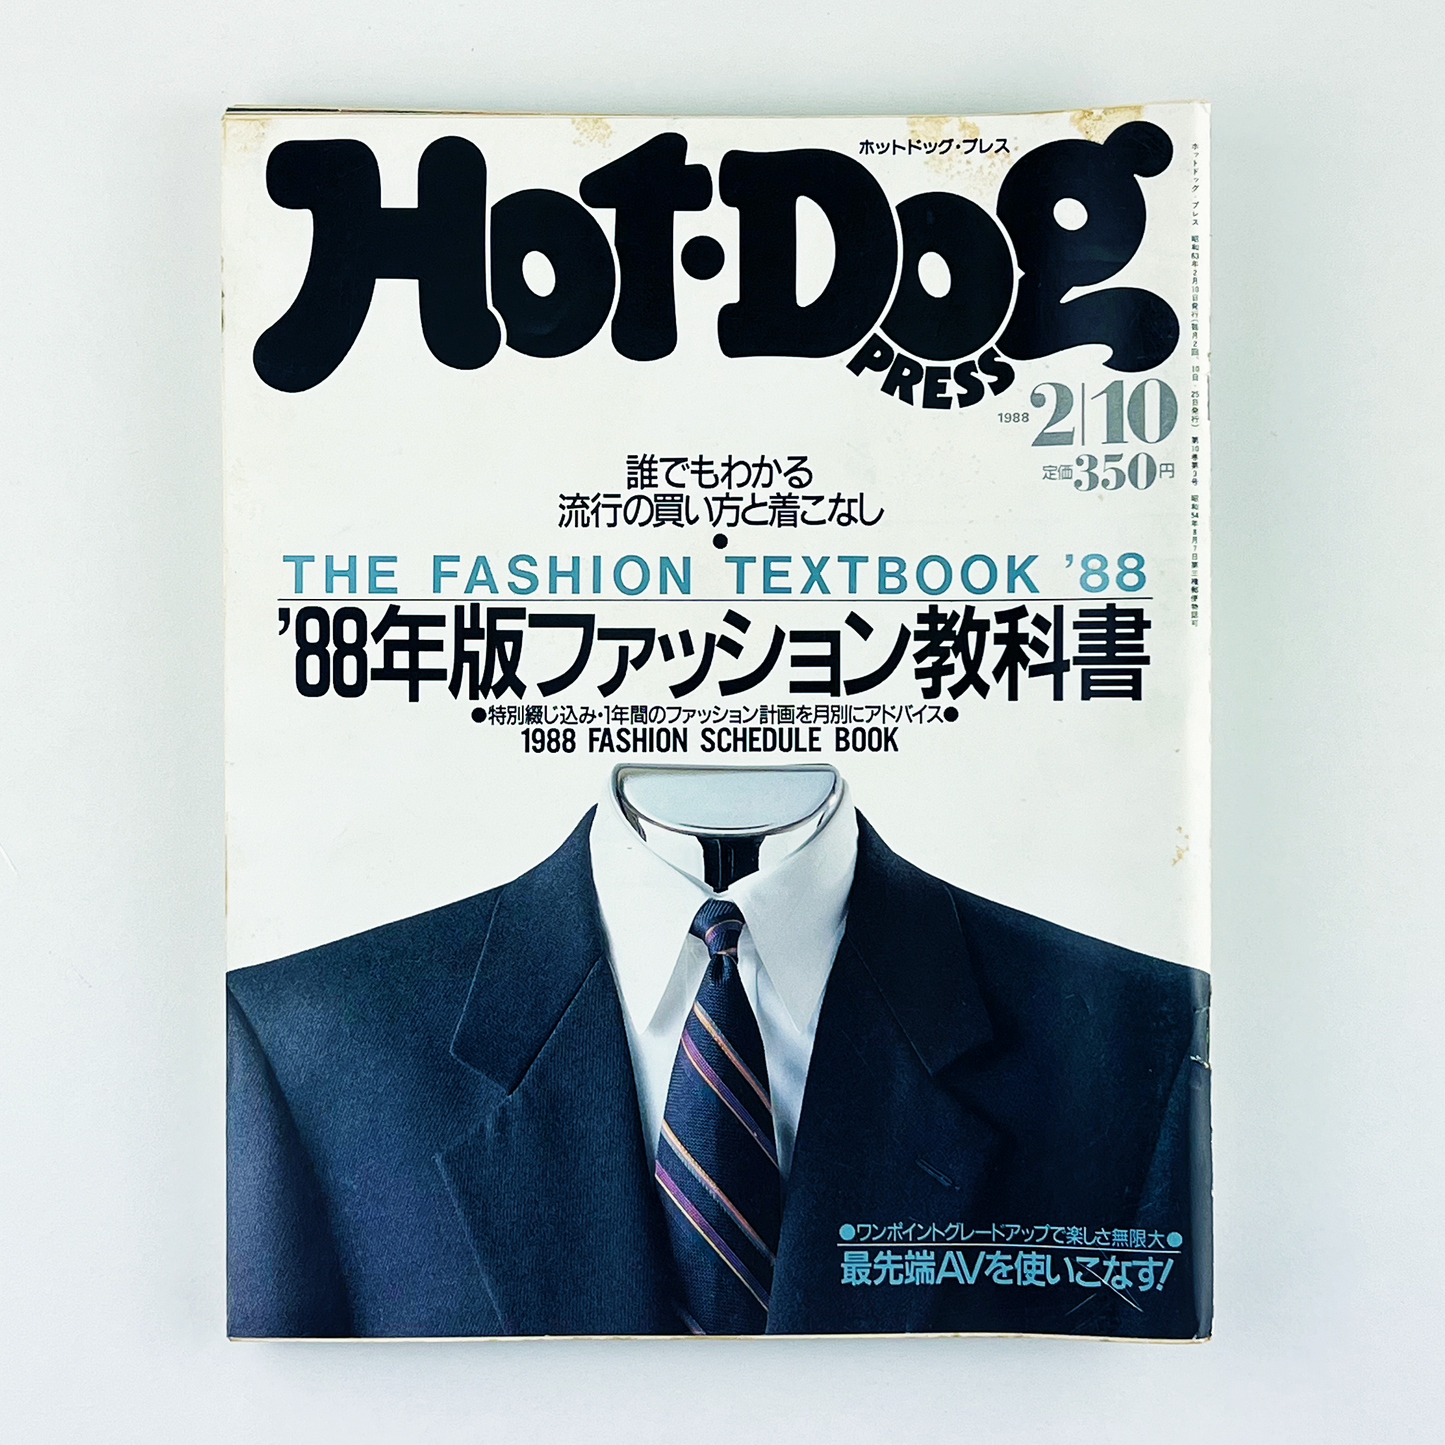 HOT-DOG PRESS No.185 ホットドッグ・プレス 2月10日号｜ホットドッグプレス編集部